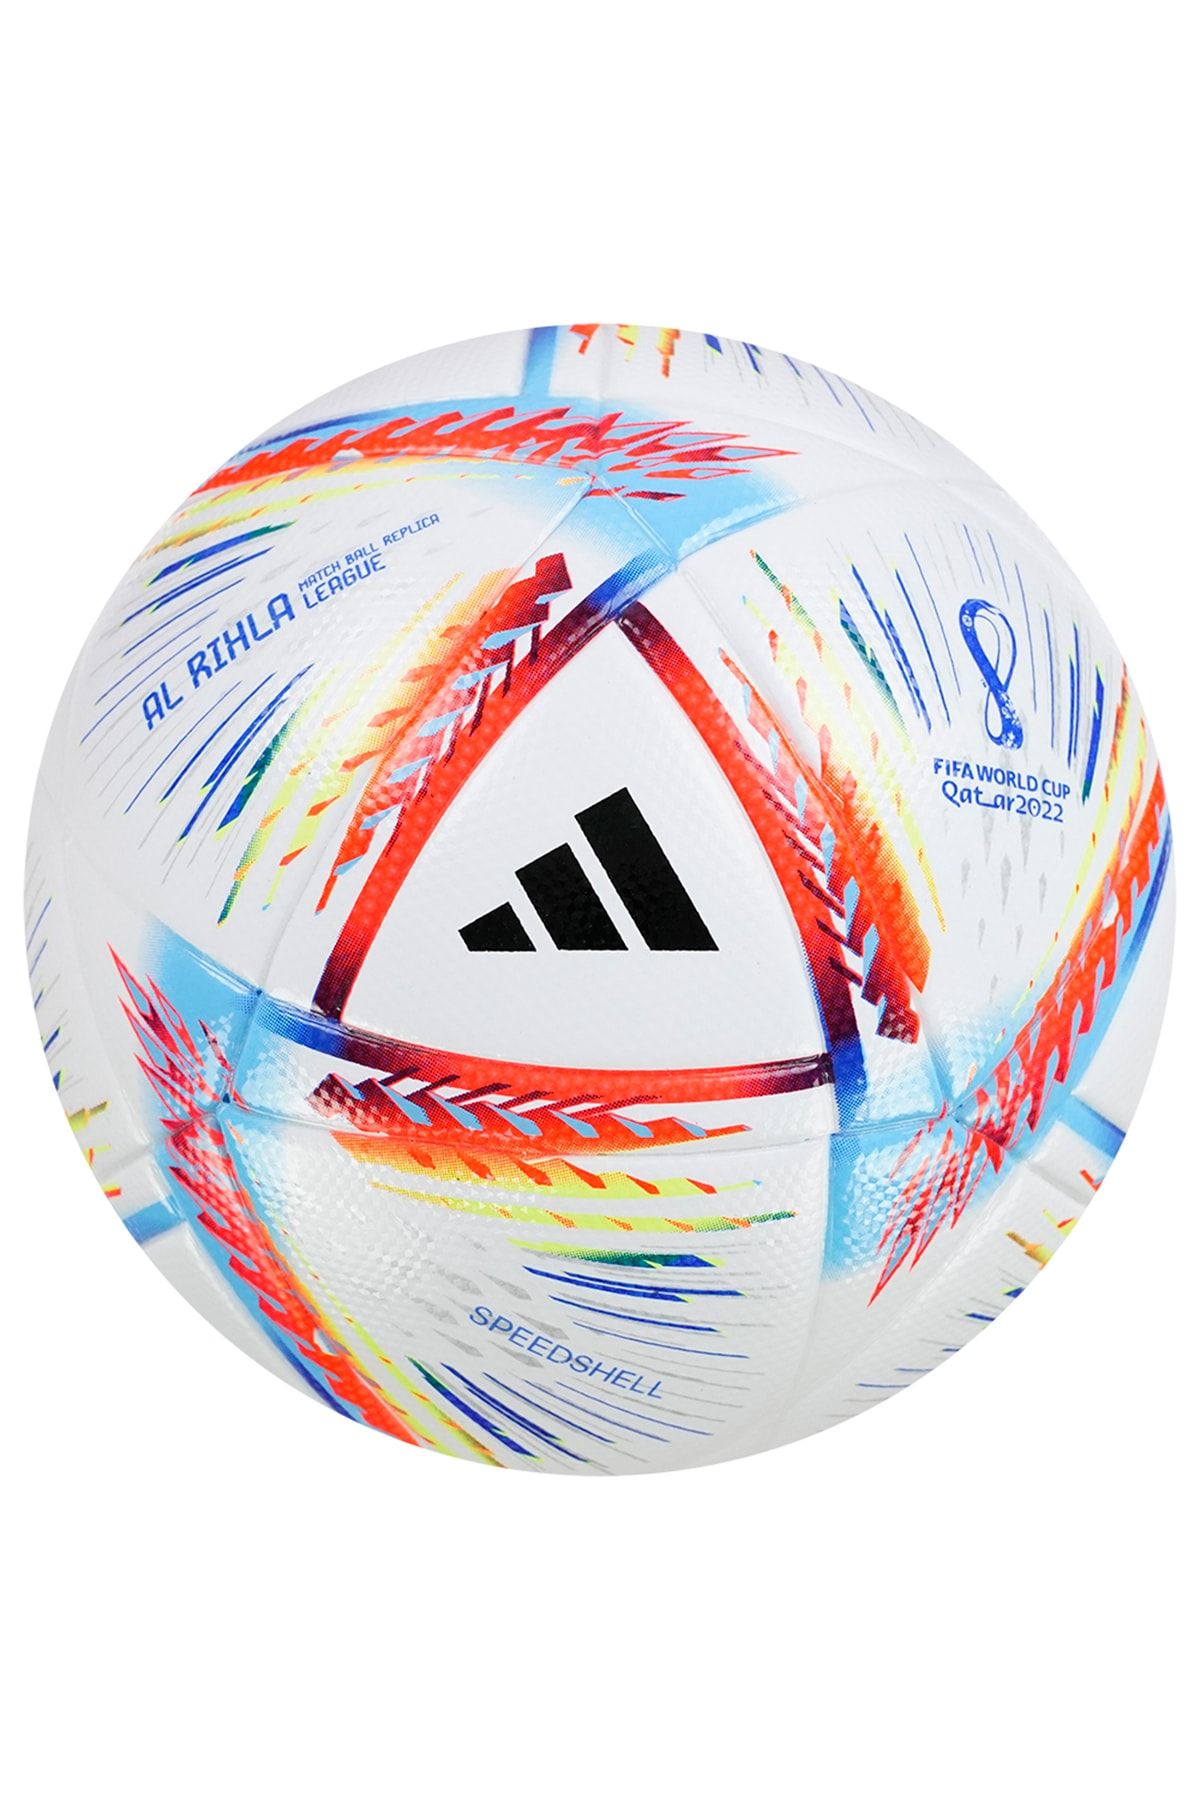 Adidas Topu | 5 Numara, Uniforia Futbol Topu Modelleri - Trendyol